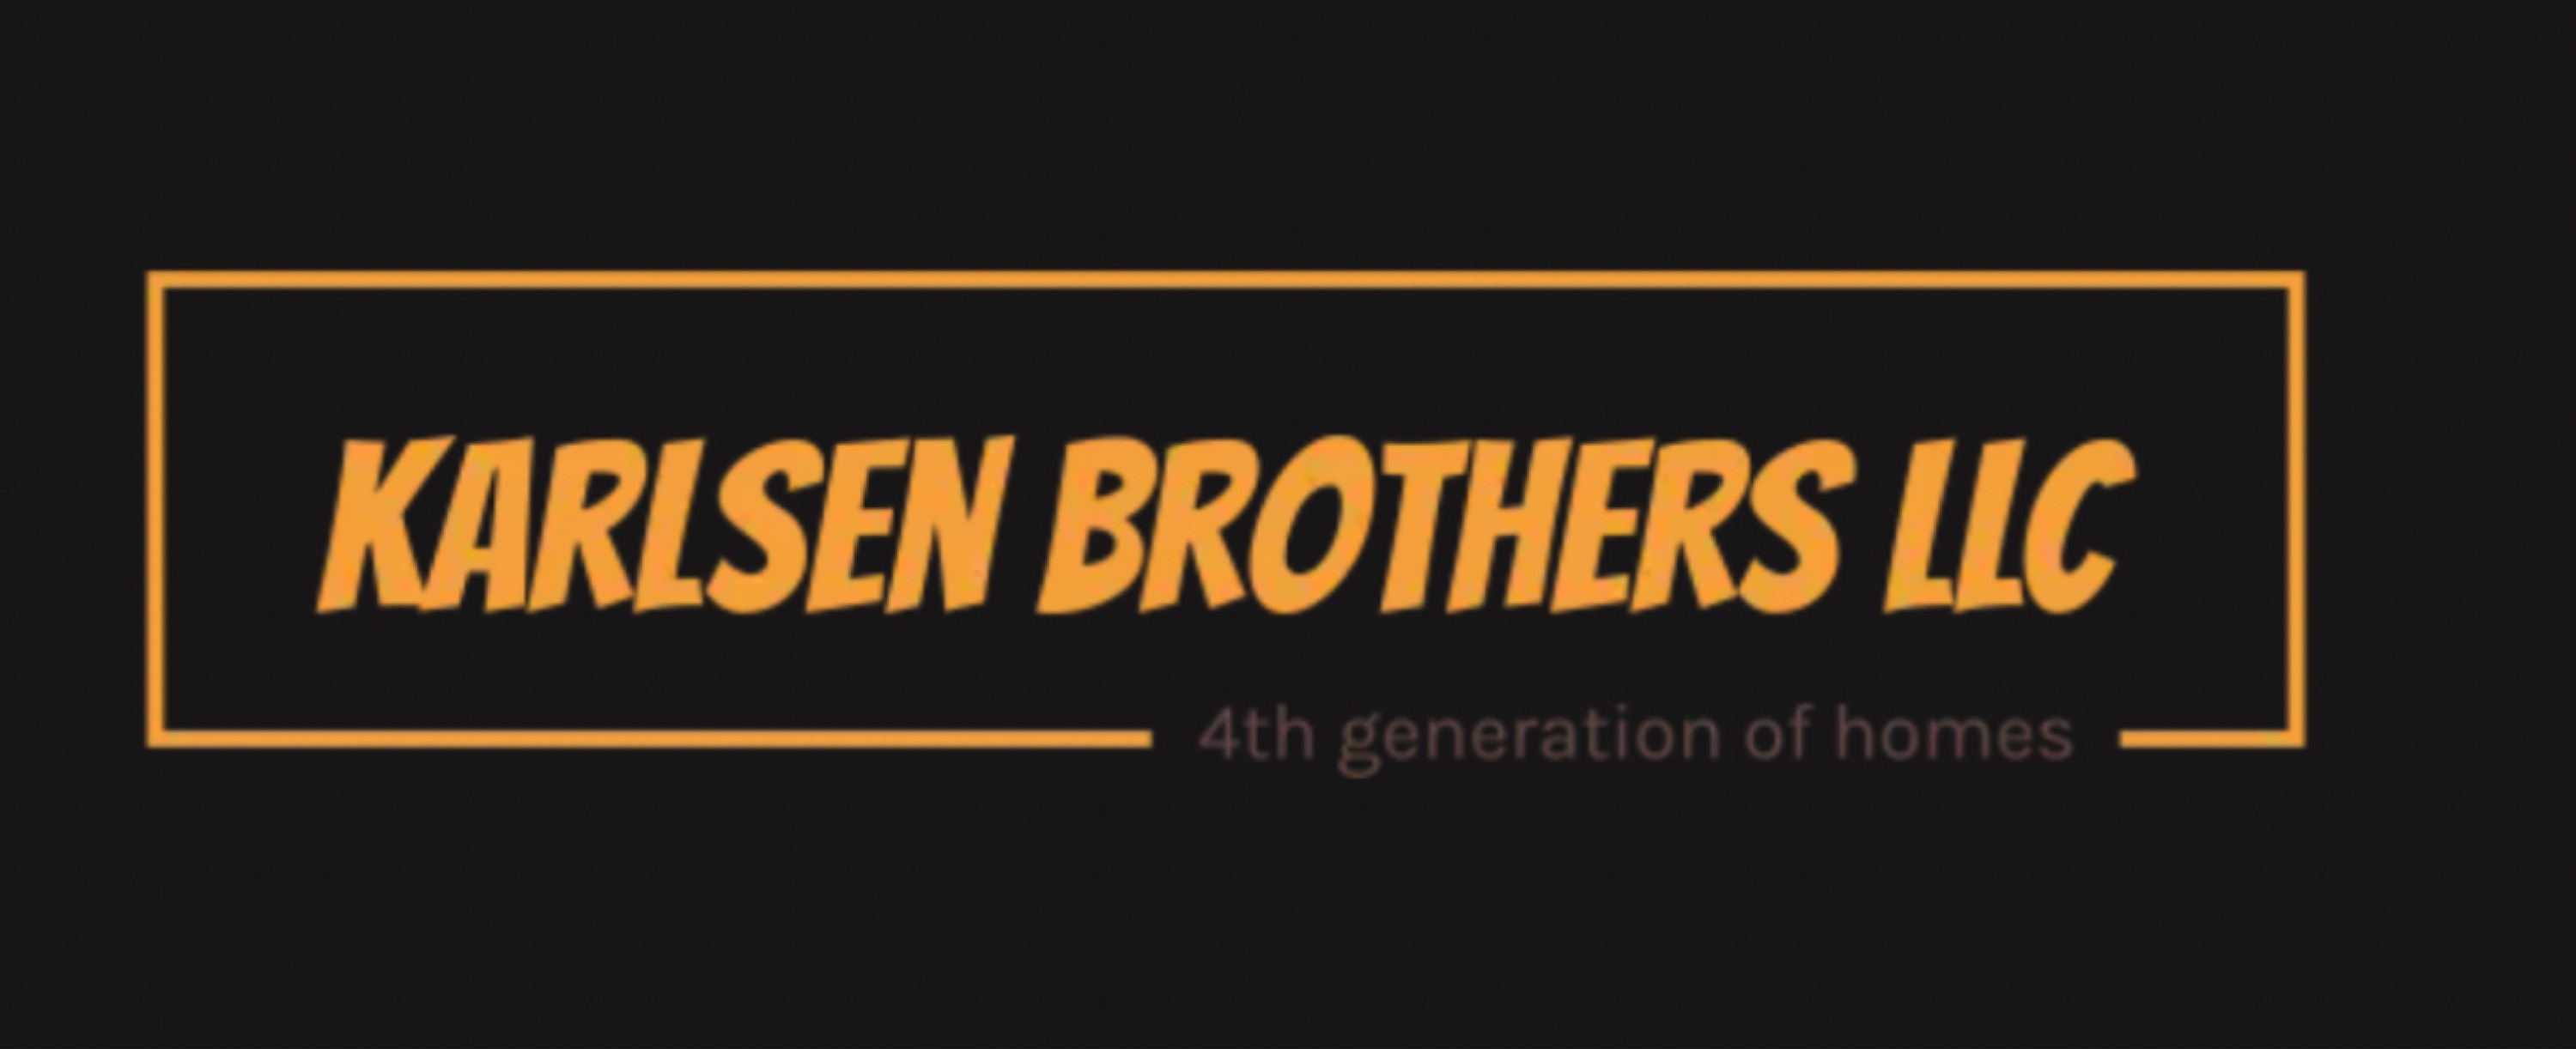 Karlsen Brothers LLC Logo